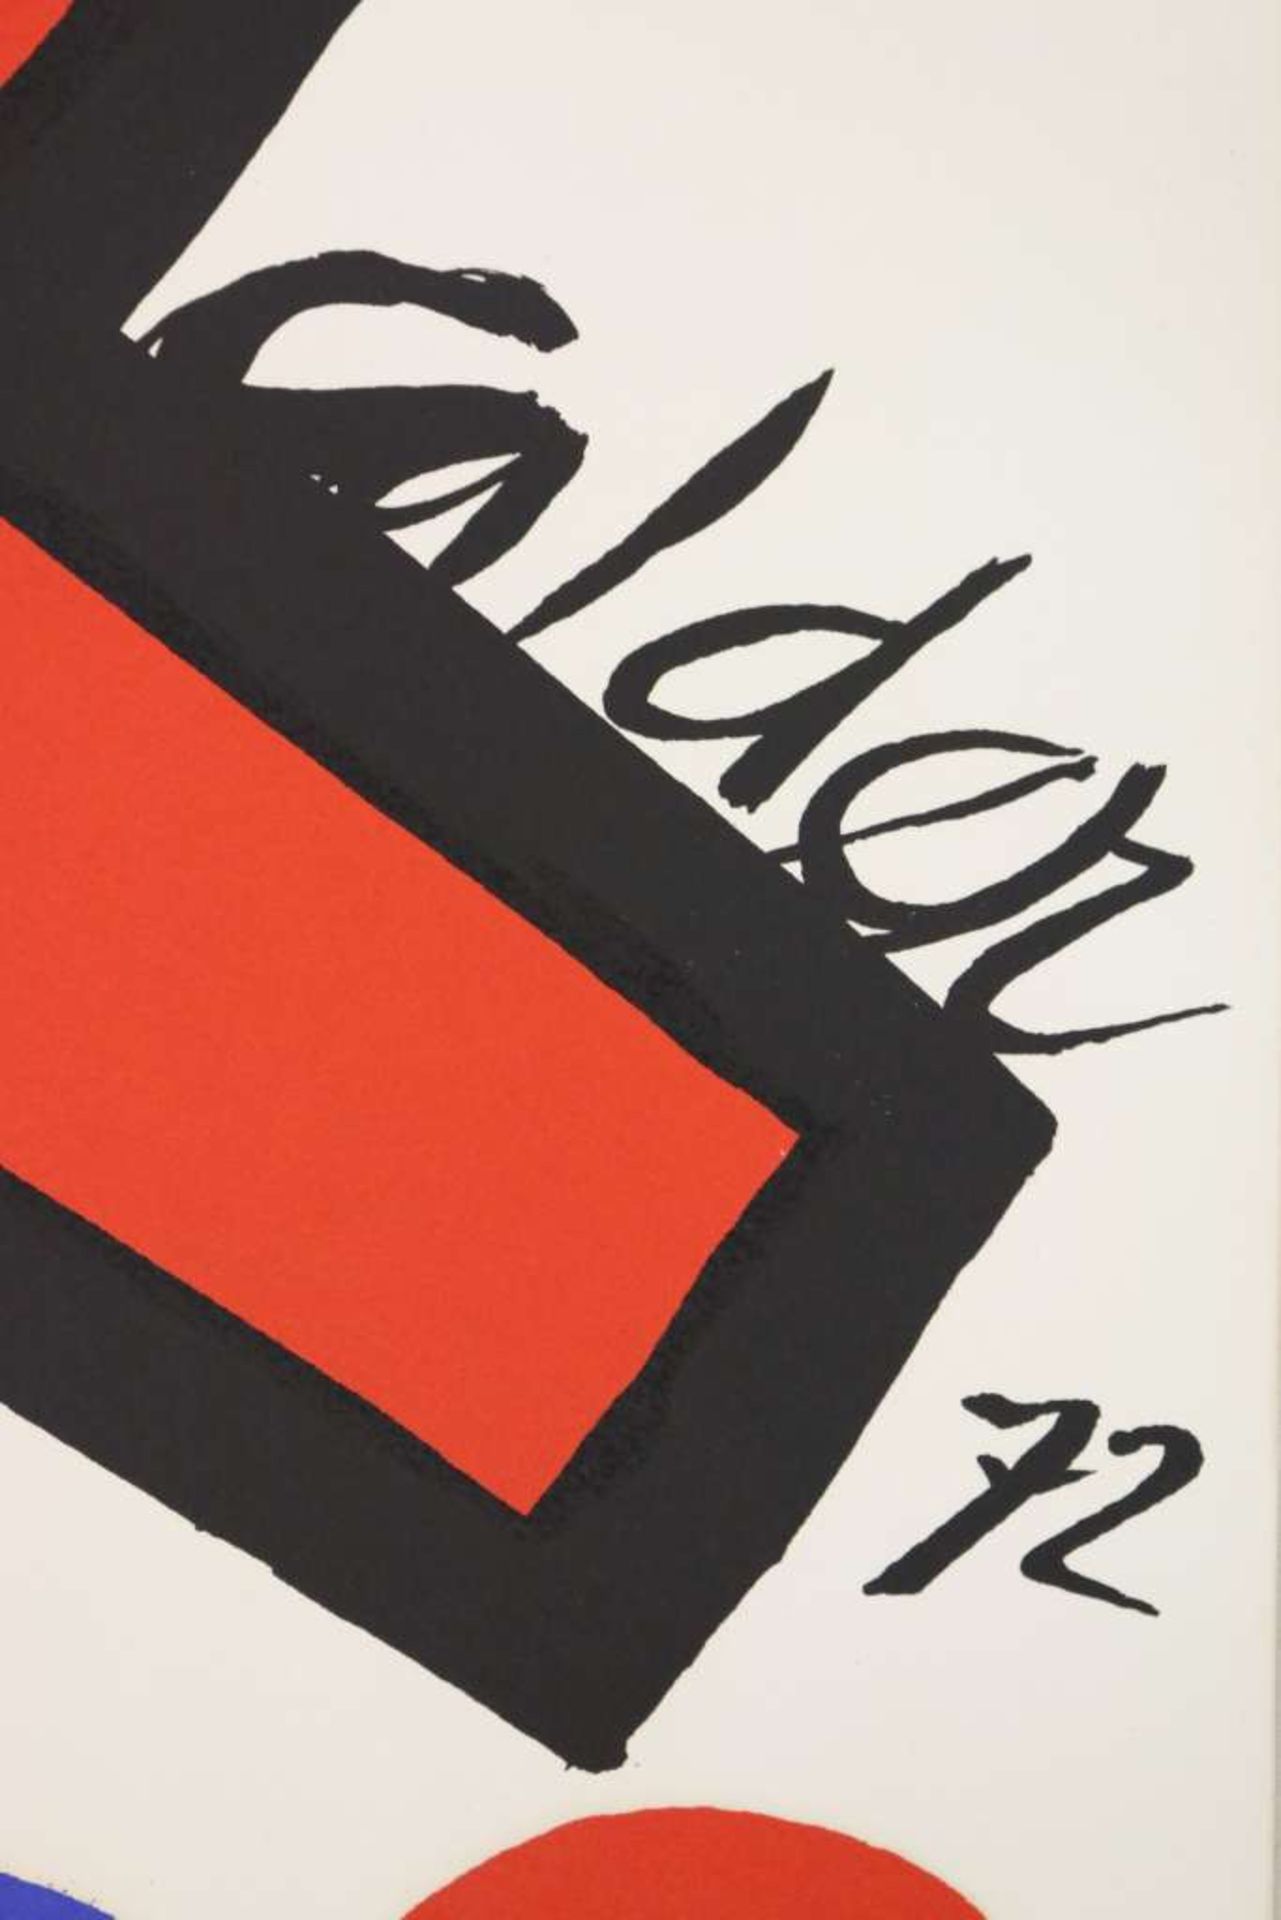 Alexander CALDER (1898-1976), "Arbre", 1972, Lithographie, Bogenmaße: ca. 81,3 x 58 cm, gebrä - Image 2 of 2